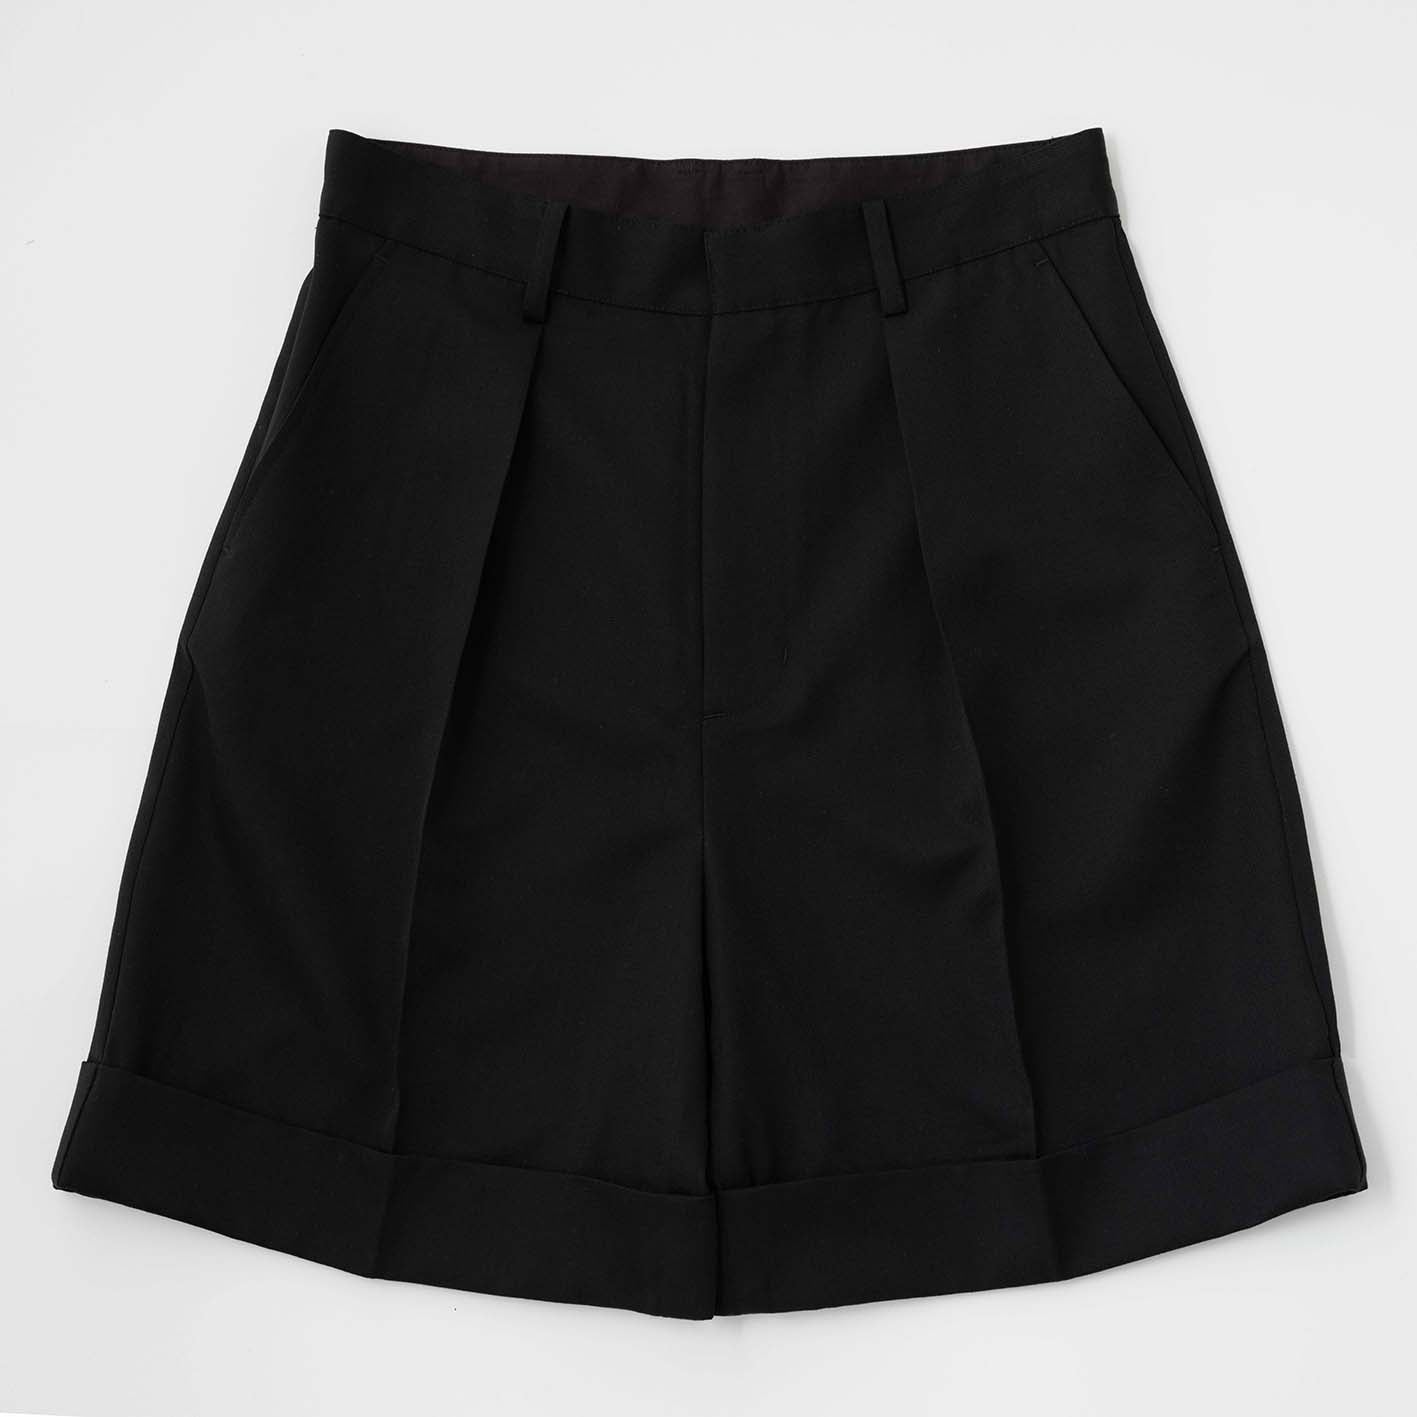 Unisex tuck shorts